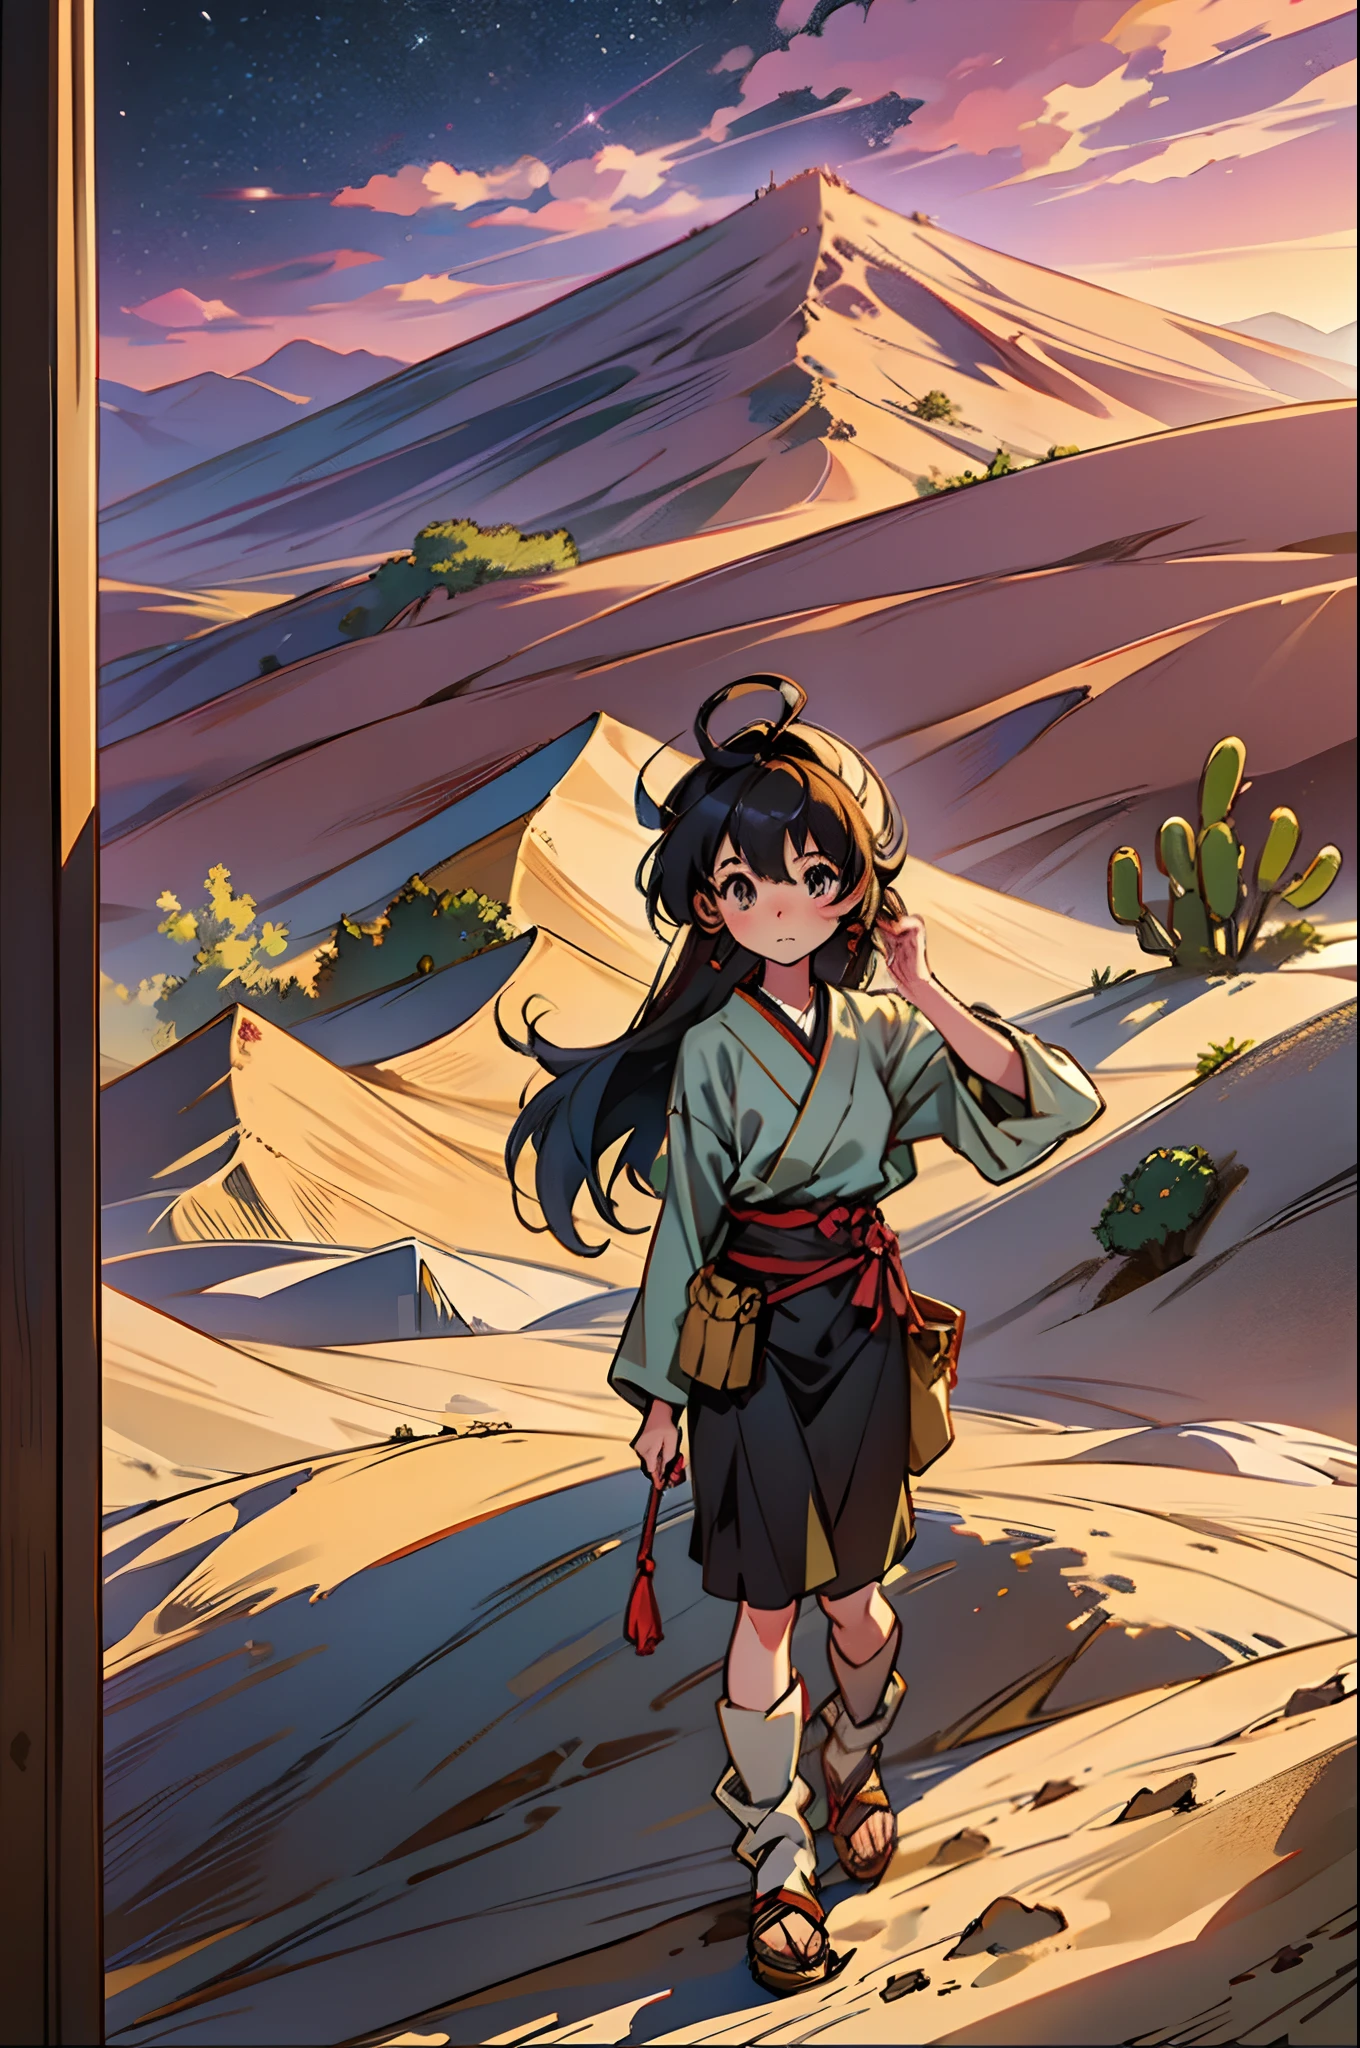 "Ein einsames japanisches Mädchen, anmutig eine grenzenlose Wüstenfläche erkunden, umgeben von majestätischen Sanddünen und hoch aufragenden Kakteen."